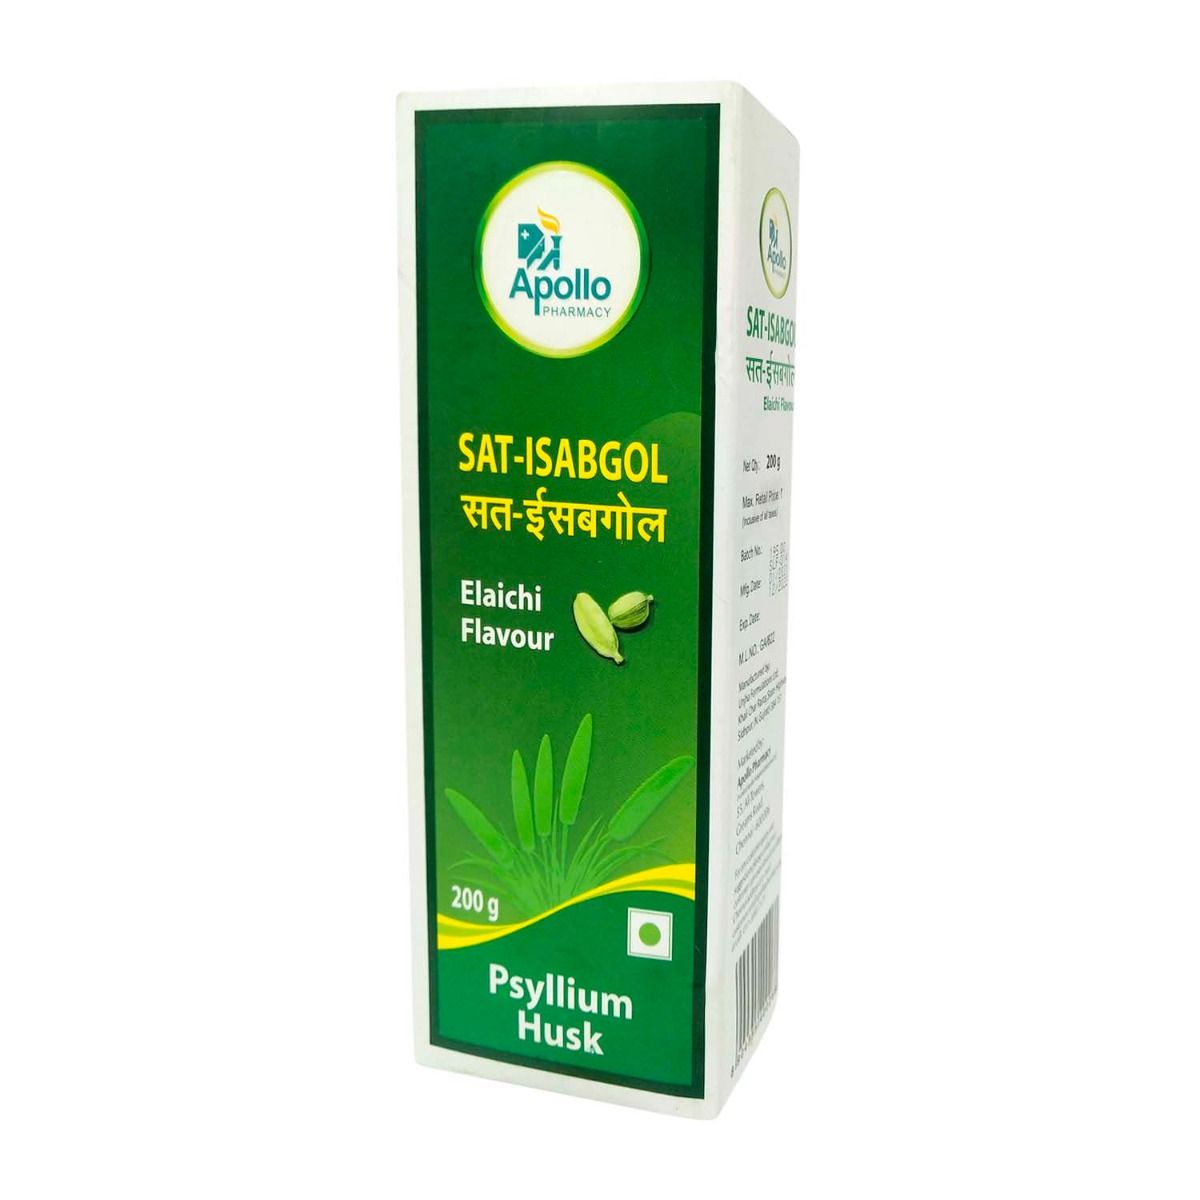 Apollo Pharmacy Sat Isabgol Elaichi Flavour Powder, 200 gm, Pack of 1 